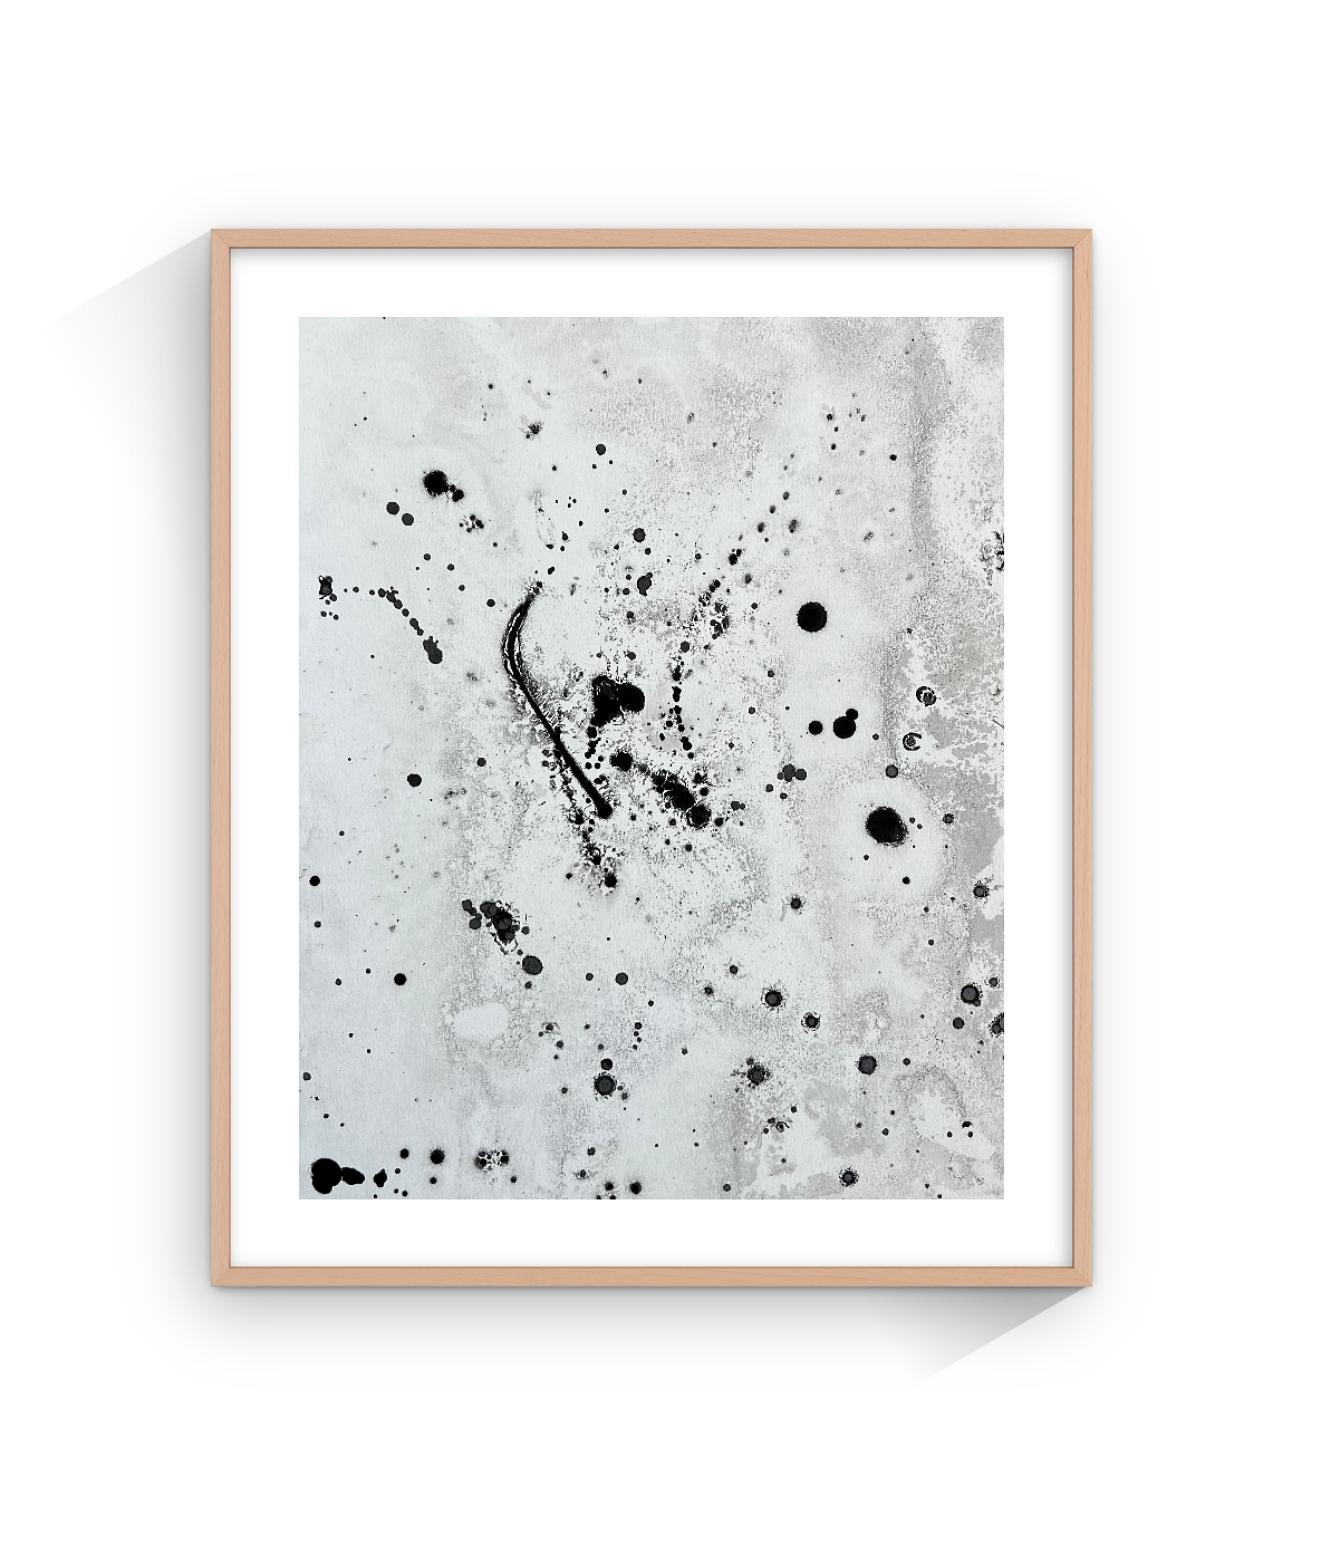 Black And White Minimal Painting ist ein Original-Kunstwerk von TUSET aus dem Jahr 2020.  Auf Wunsch können wir es in Naturholz einrahmen.

Der Titel dieses Werks lautet 